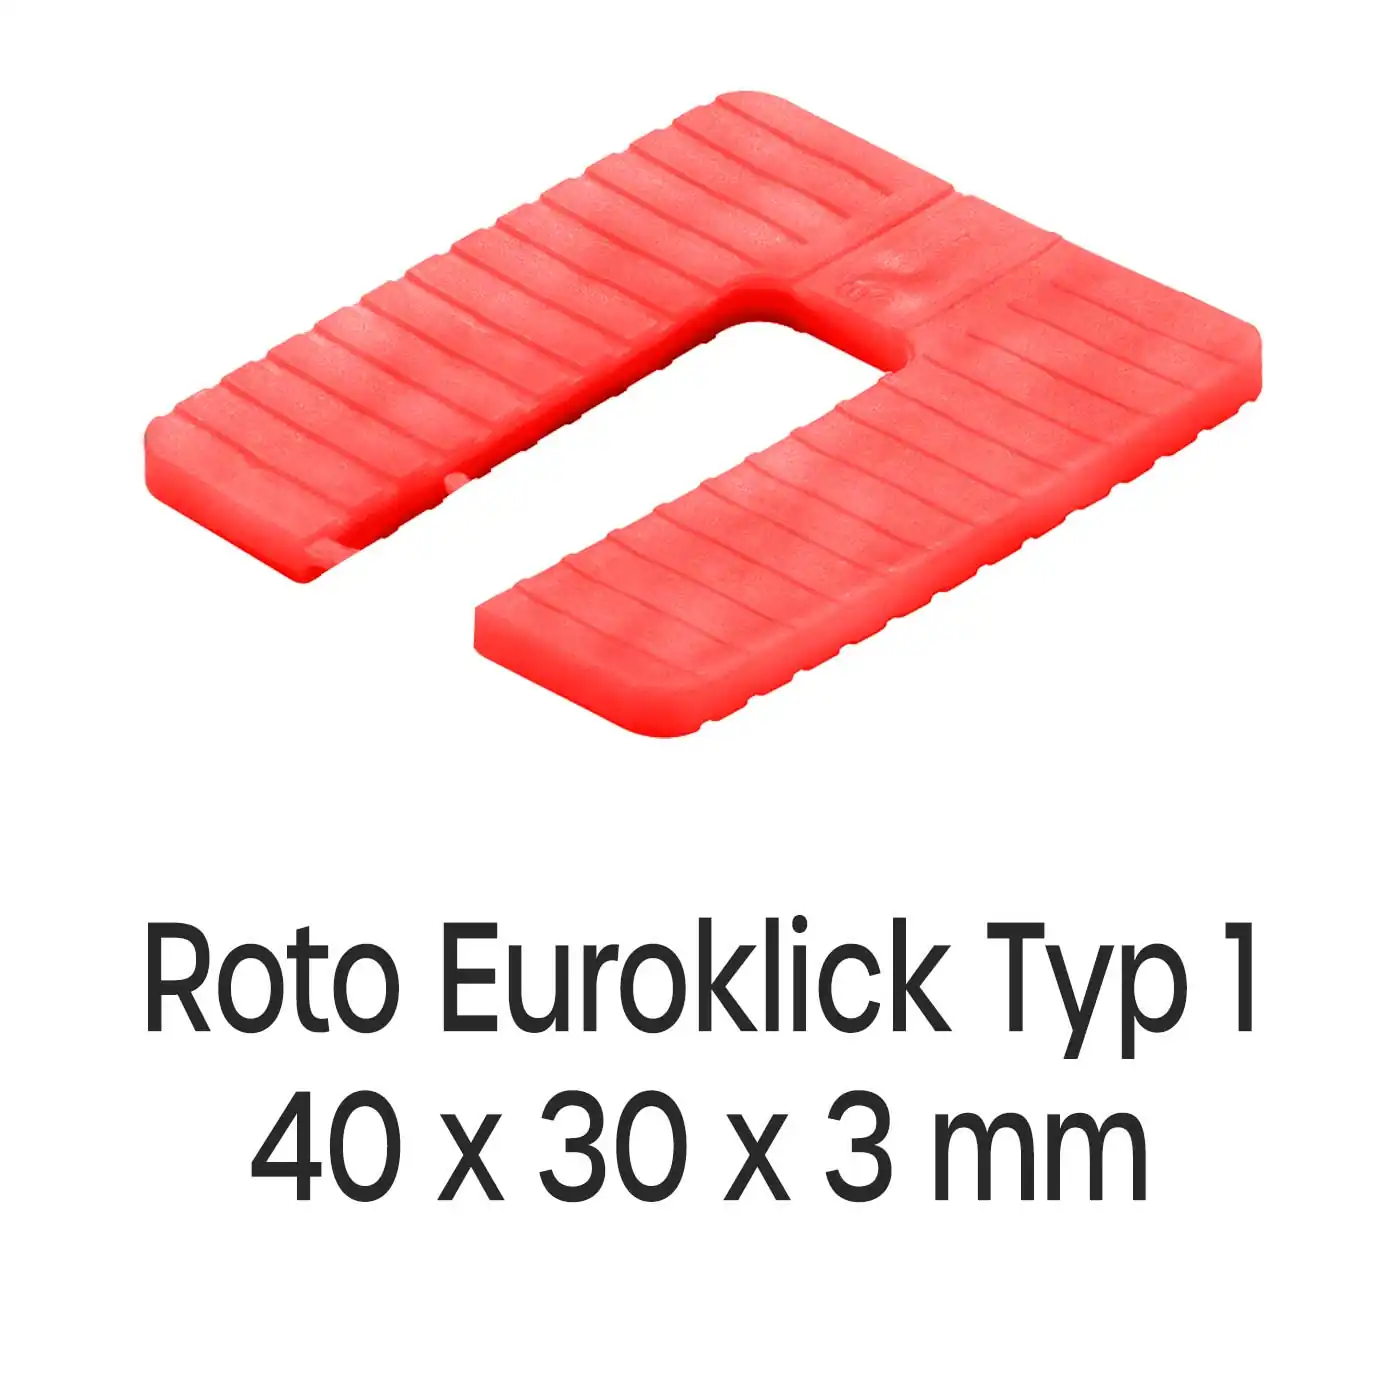 Distanzplatten Roto Euroklick Typ 1 40 x 30 x 3 mm 1000 Stück